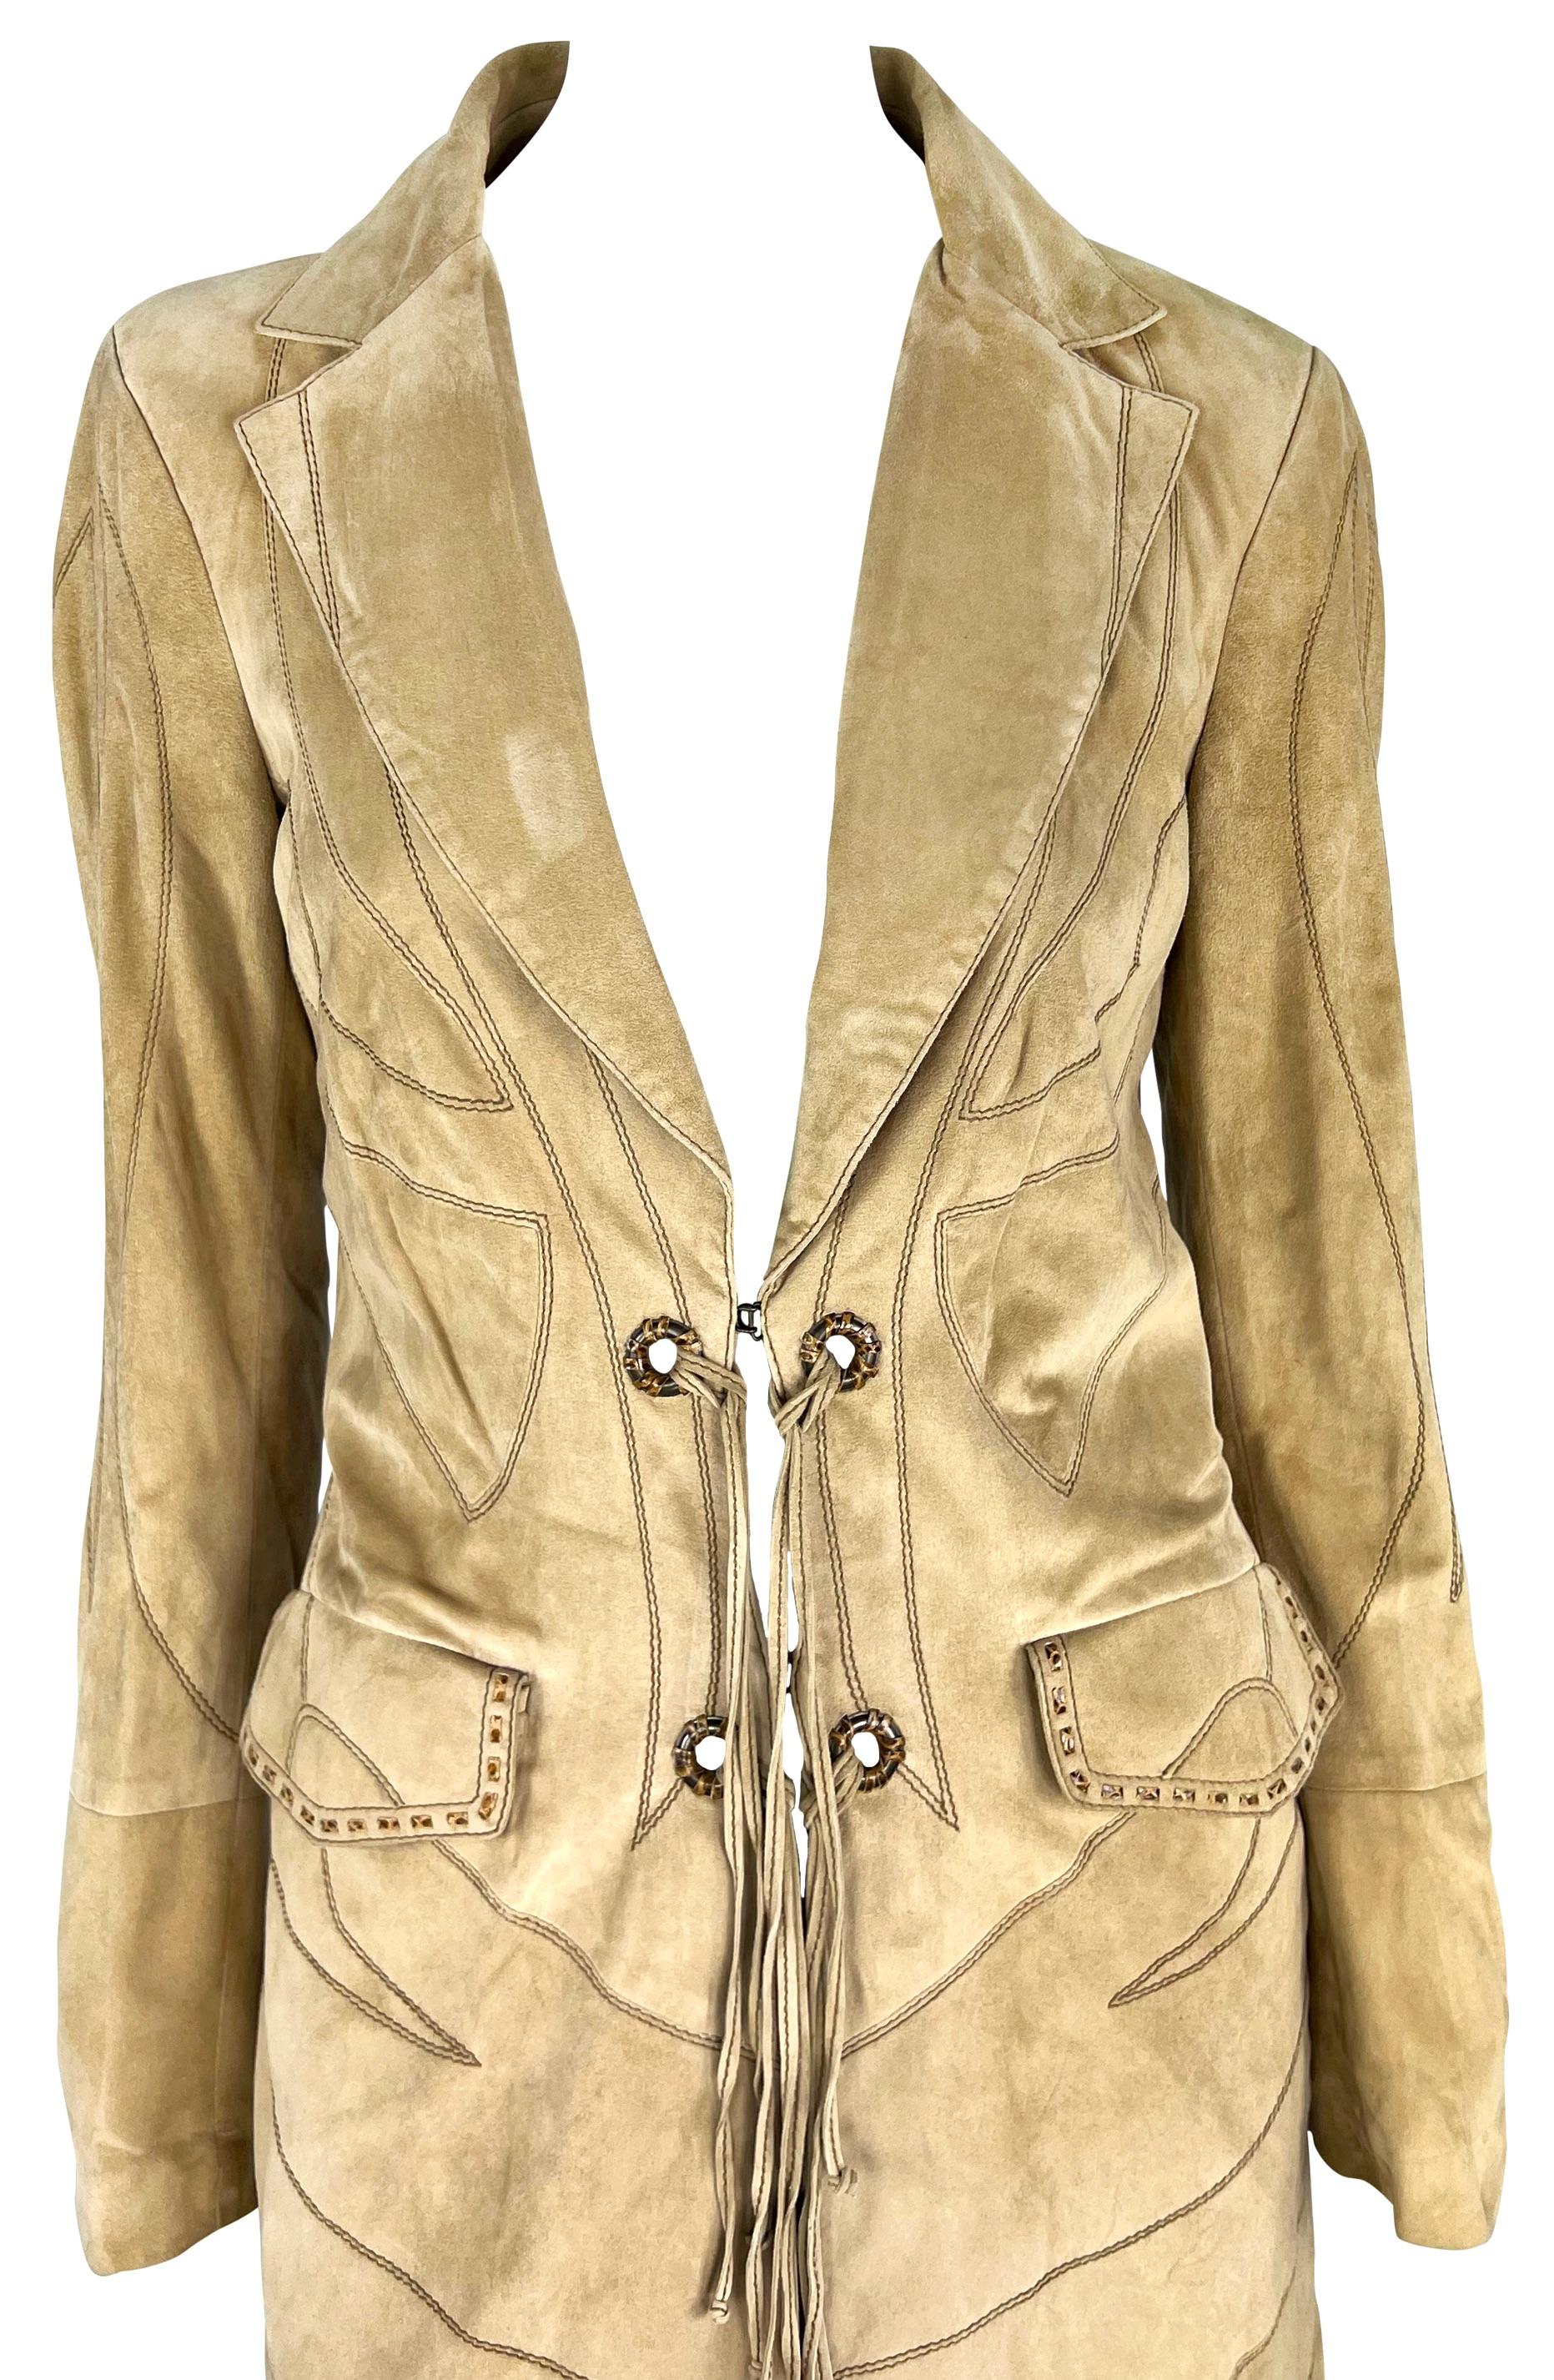 Dieser vom amerikanischen Westen inspirierte Mantel aus der Roberto Cavalli Kollektion Herbst/Winter 2007 ist komplett aus hellbraunem Wildleder gefertigt. Der Mantel ist mit dramatischen Stickereien bedeckt und verfügt über einen umklappbaren